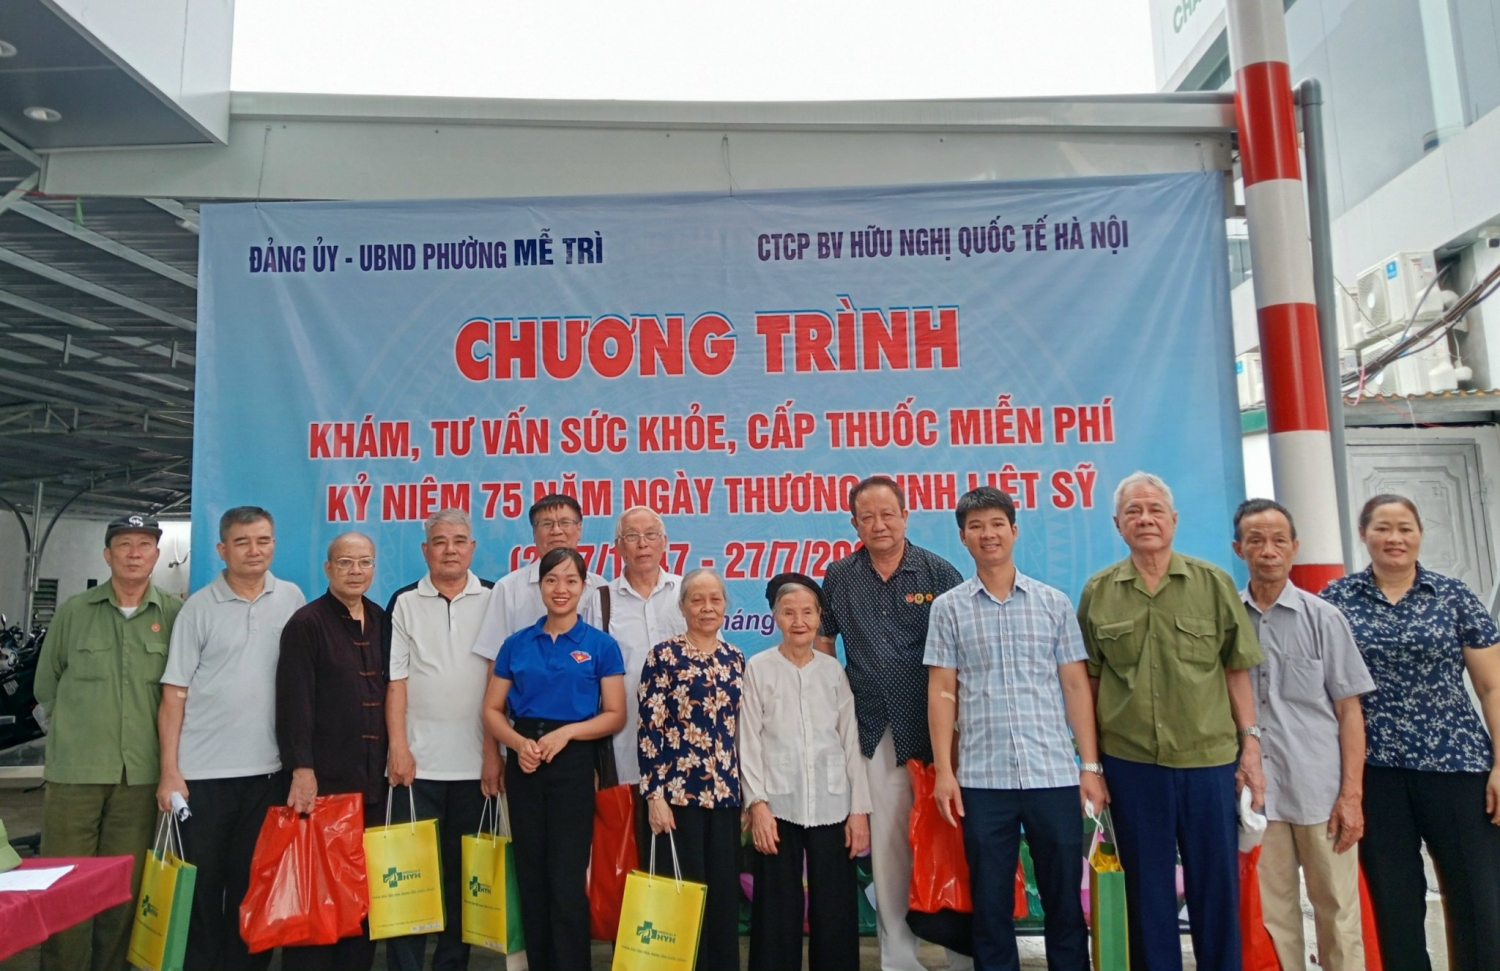 Hà Nội: Phường Mễ Trì tổ chức khám sức khỏe cho các đối tượng chính sách